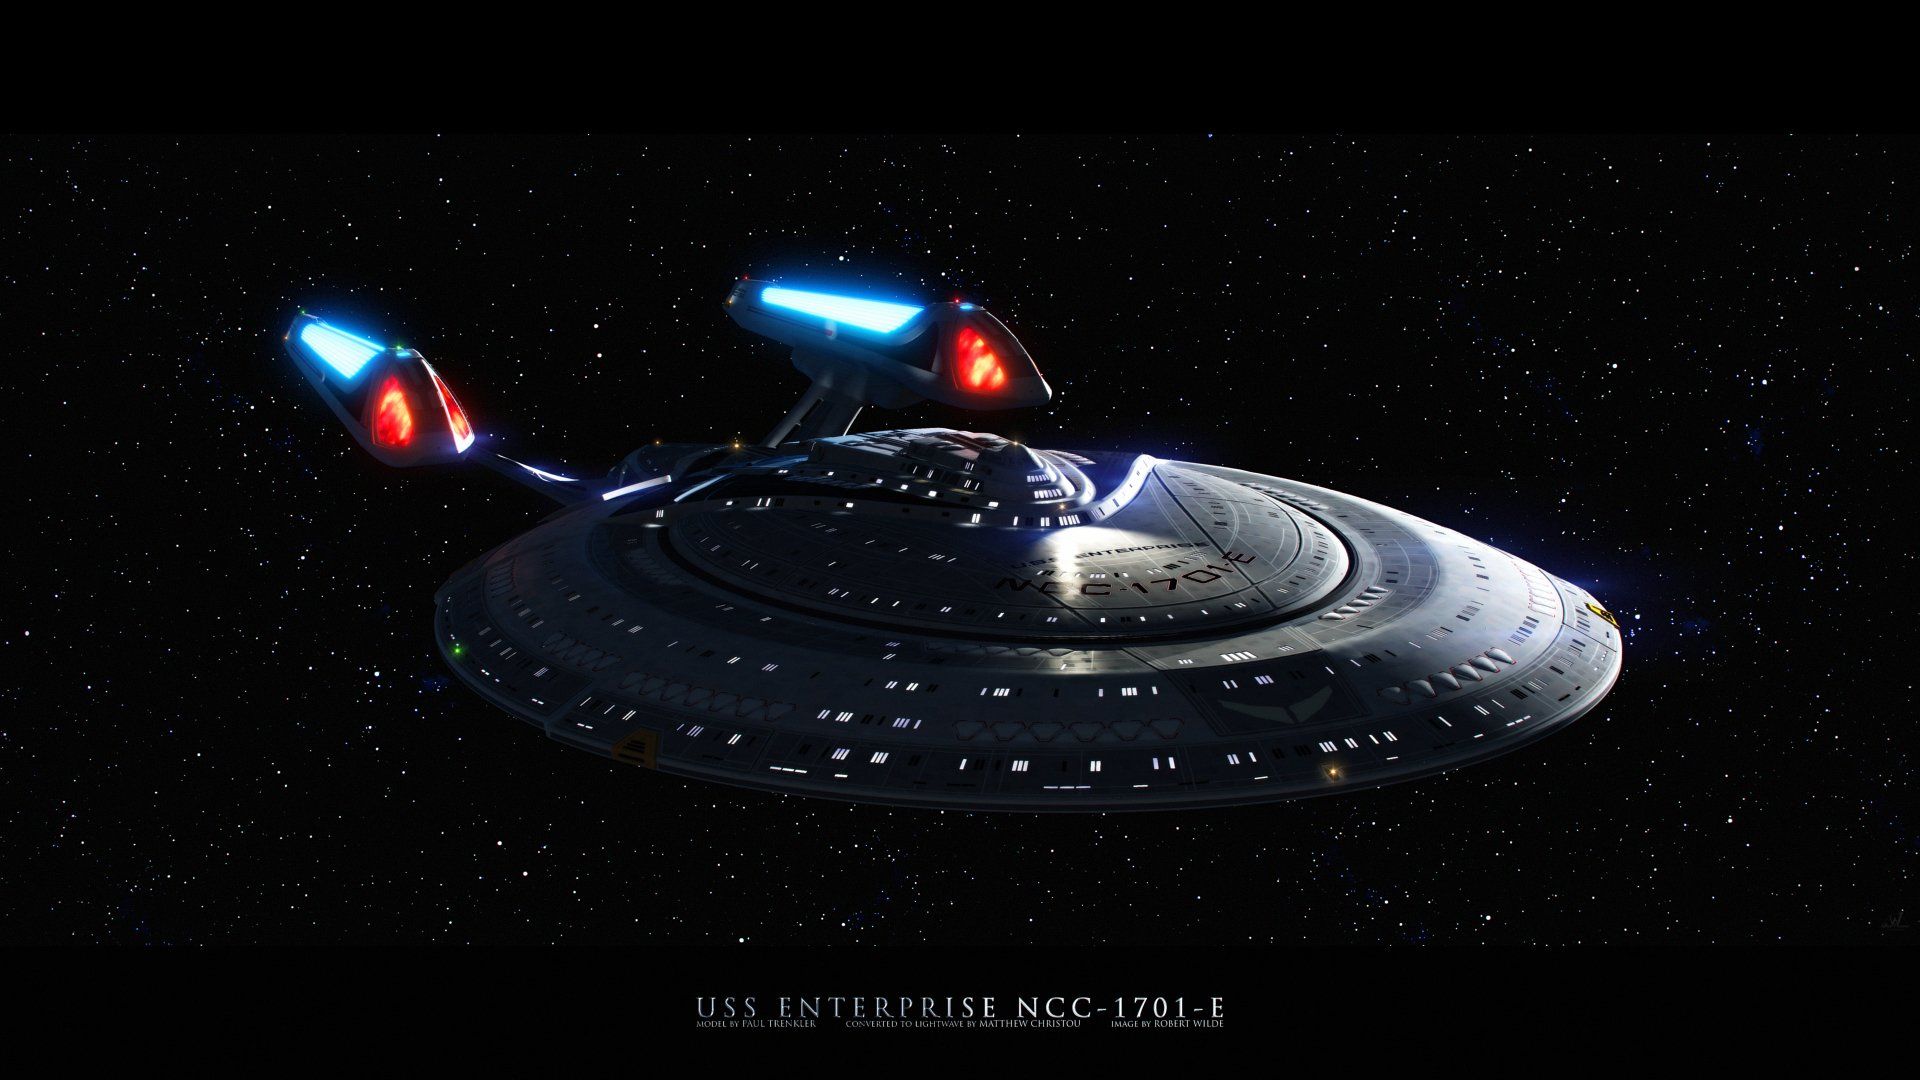 USS Enterprise NCC-1701-E wallpaper, 1920x1080, #000000, #00A8A8, #00B8B8, #00C8C8, #00D8D8, #00E8E8, #00F8F8, #000000 - Star Trek